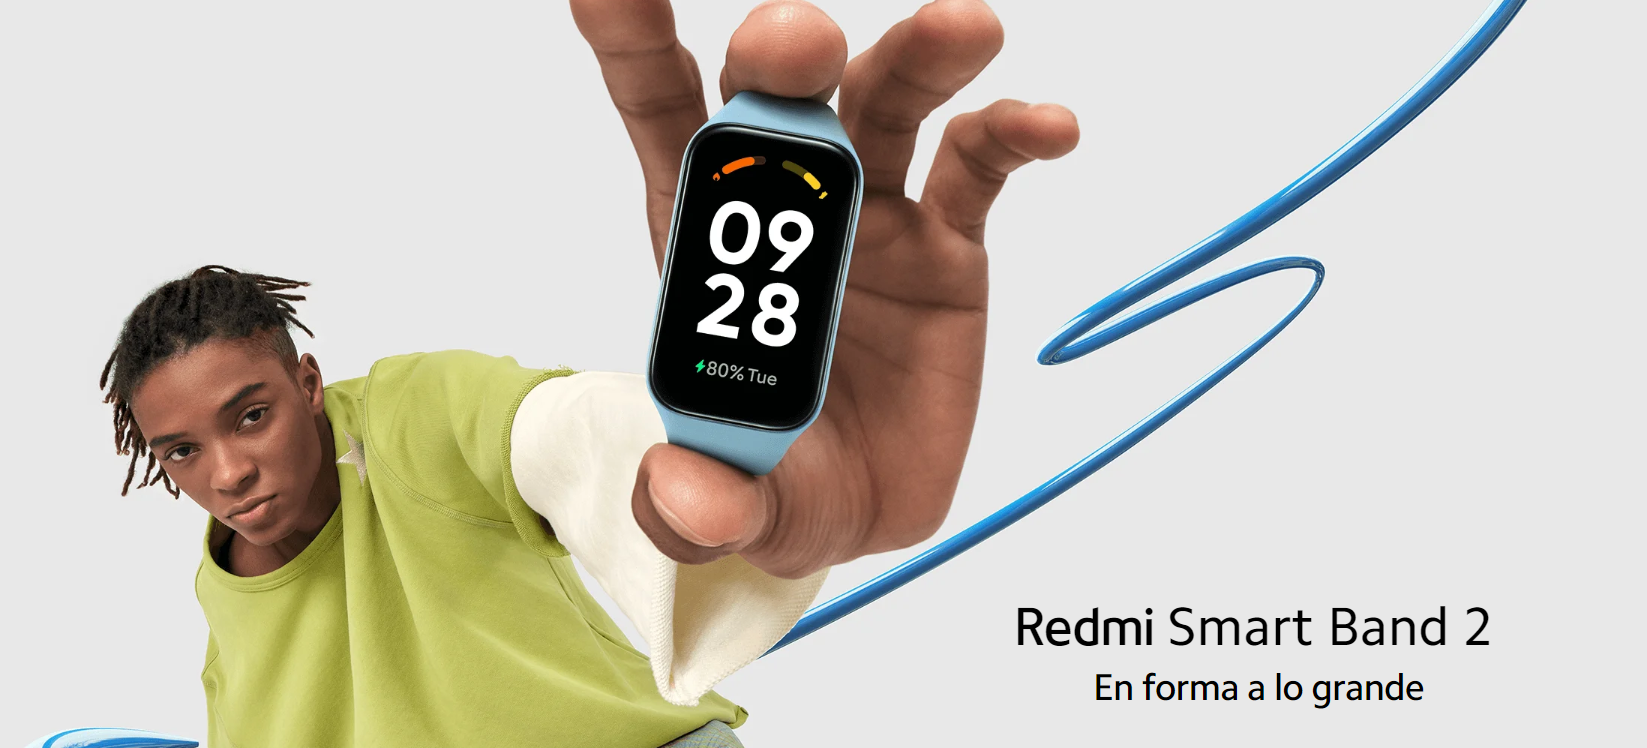 Smart band Xiaomi 2 Redmi 44491 TFT Negro Gollo Costa Rica